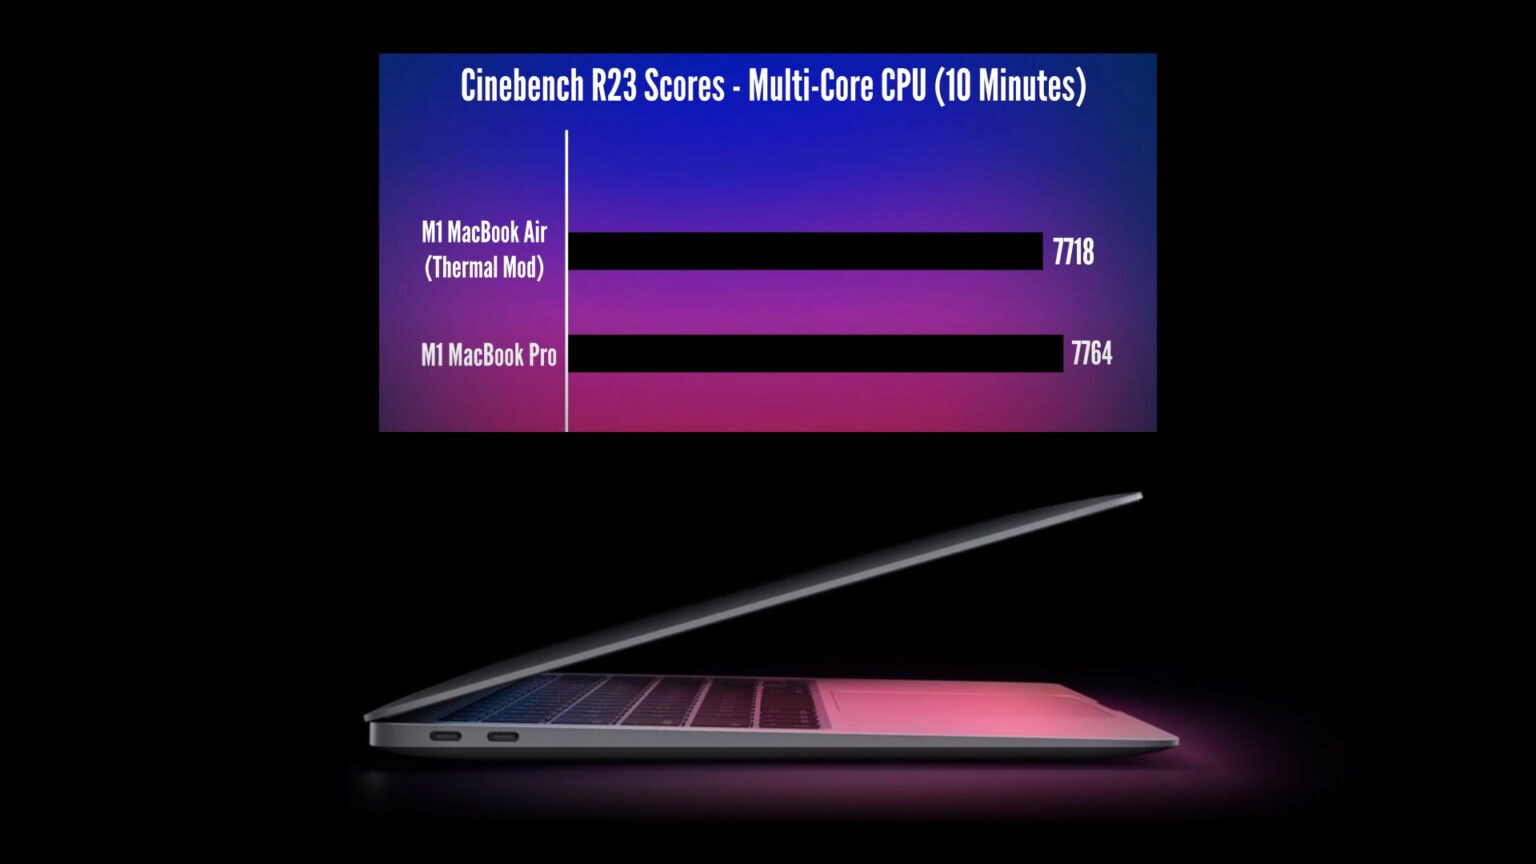 M1 MacBook Air thermal mod